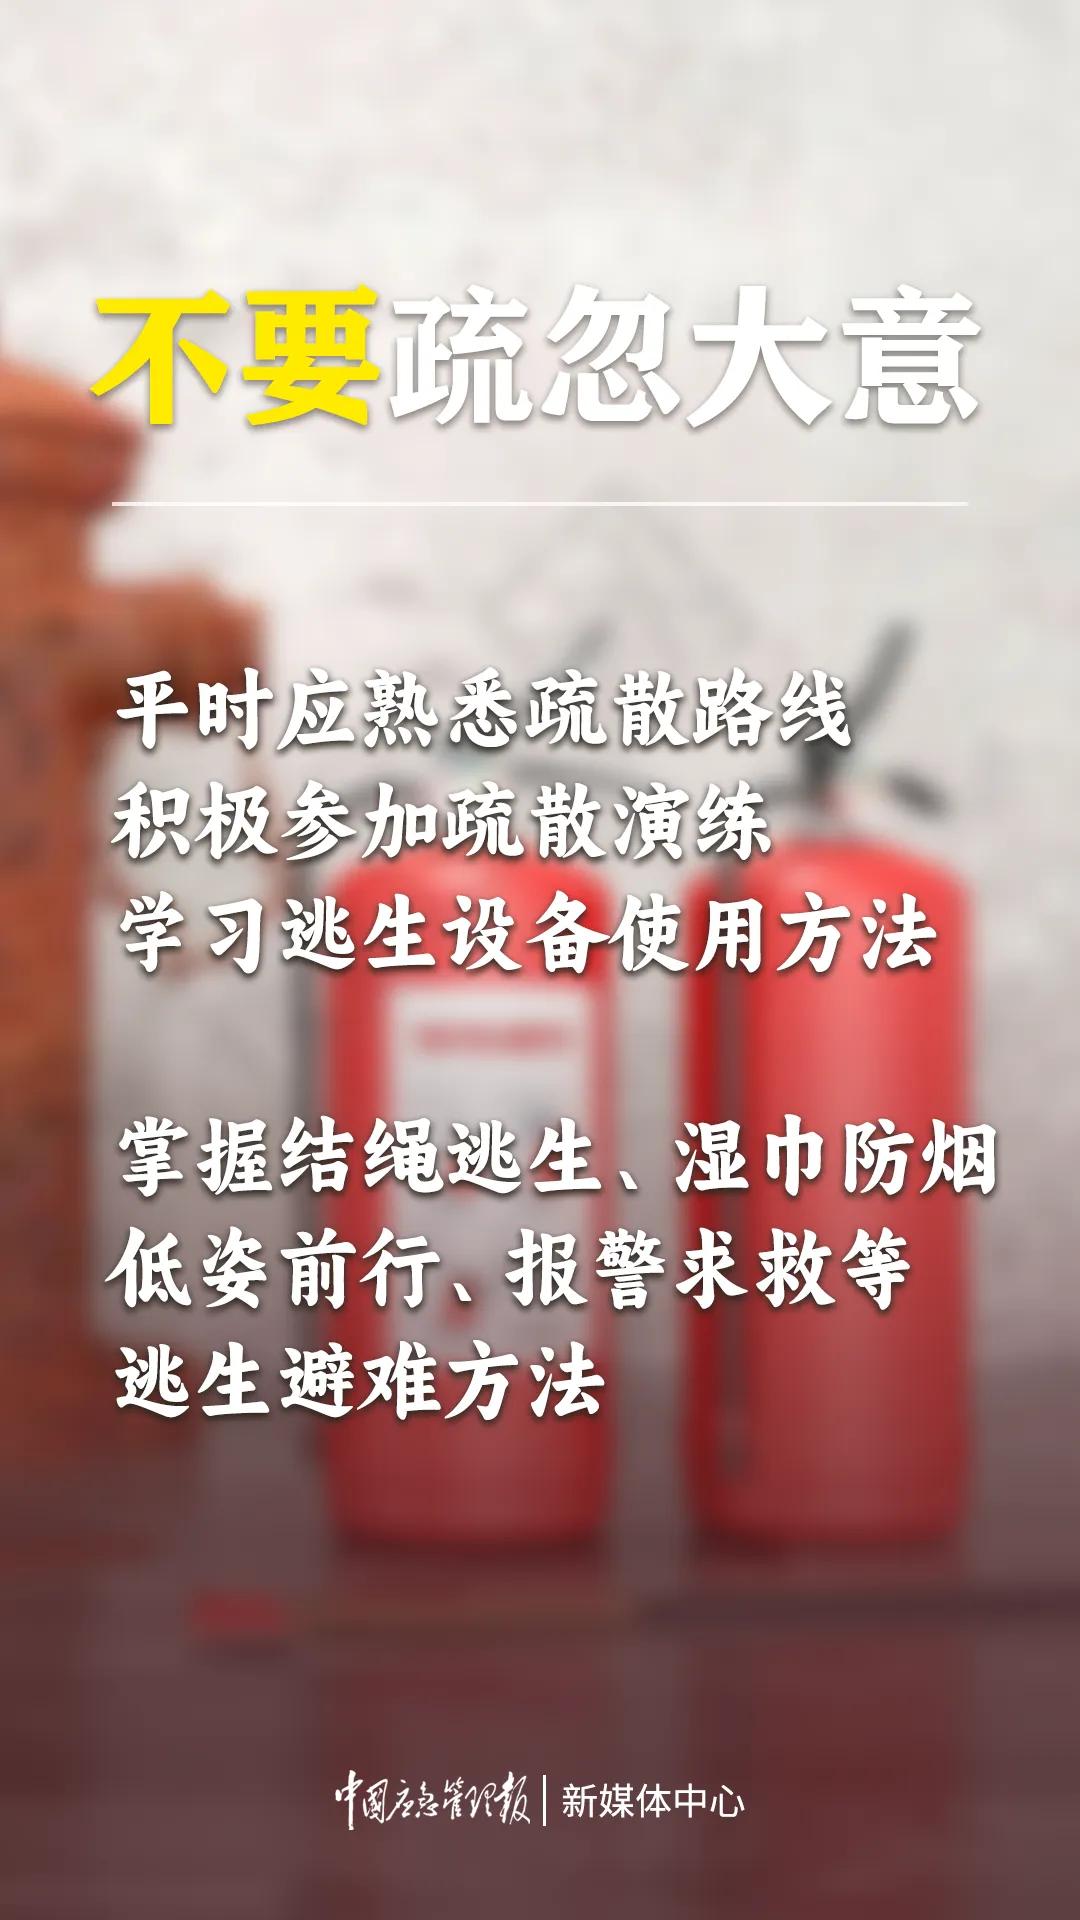 来源：南昌消防、中国应急管理报